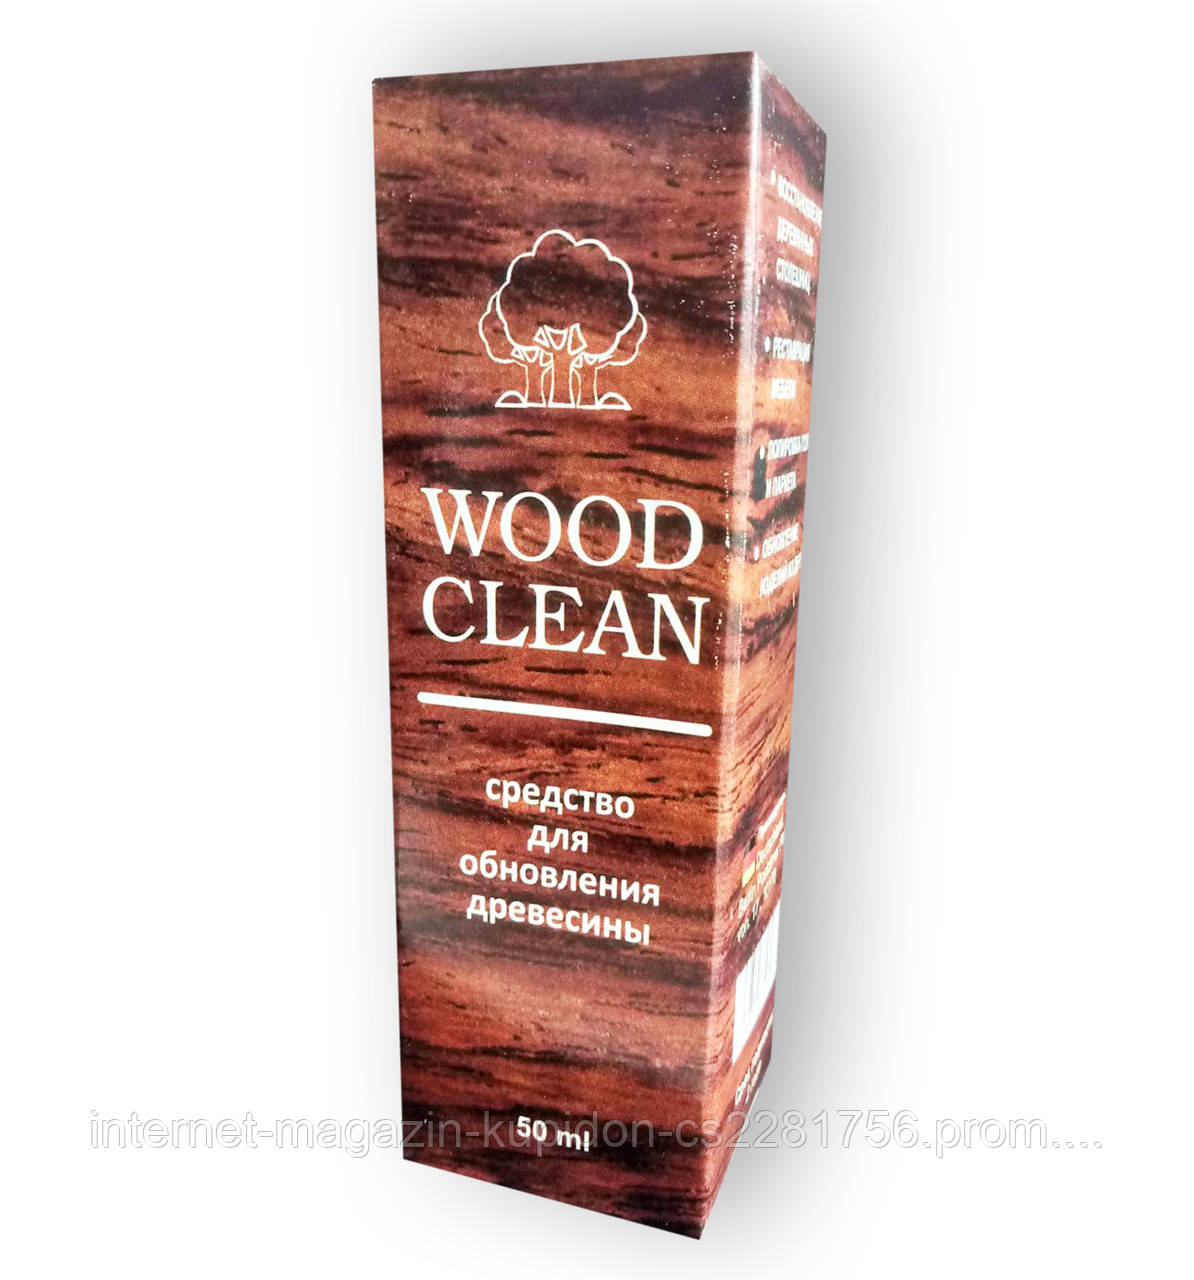 Wood Clean - Cредство для обновления древесины полироль (Вуд Клин)